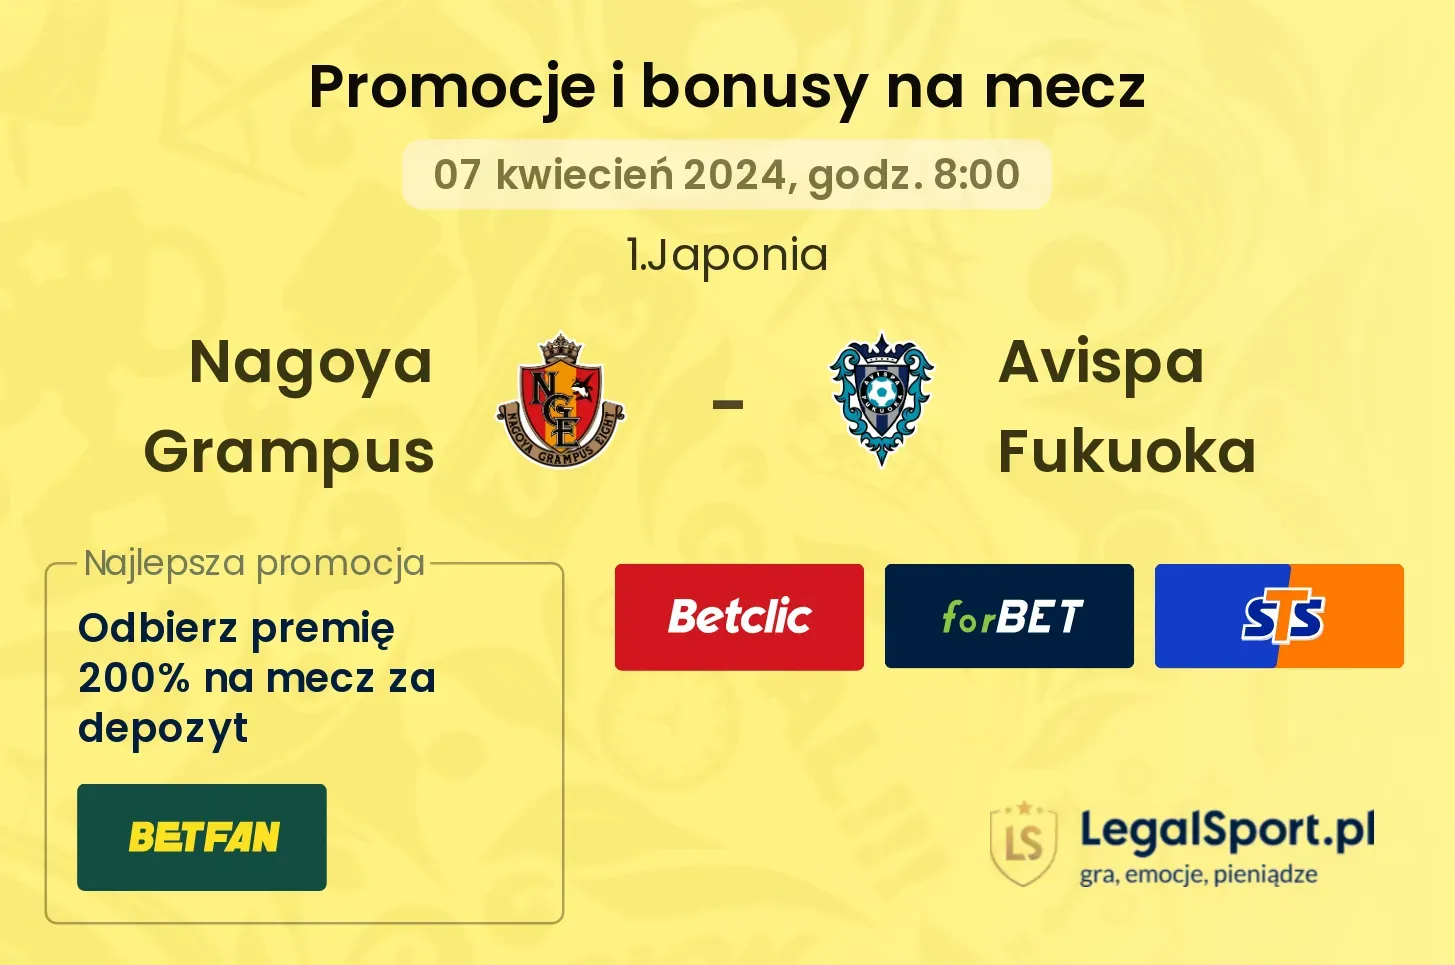 Nagoya Grampus - Avispa Fukuoka promocje bonusy na mecz